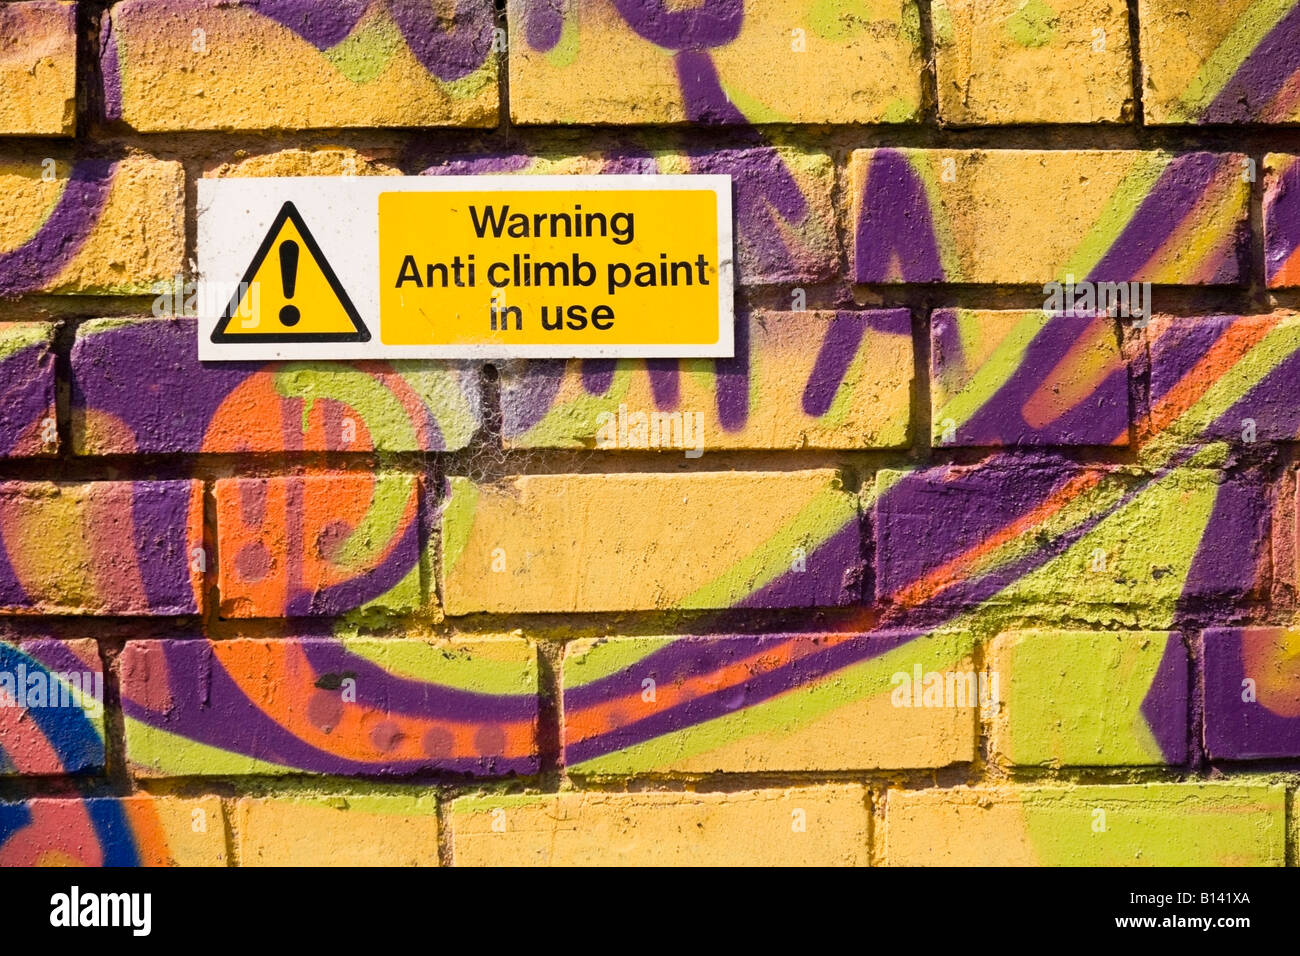 Anti climb paint warning on a graffiti covered wall Stock Photo